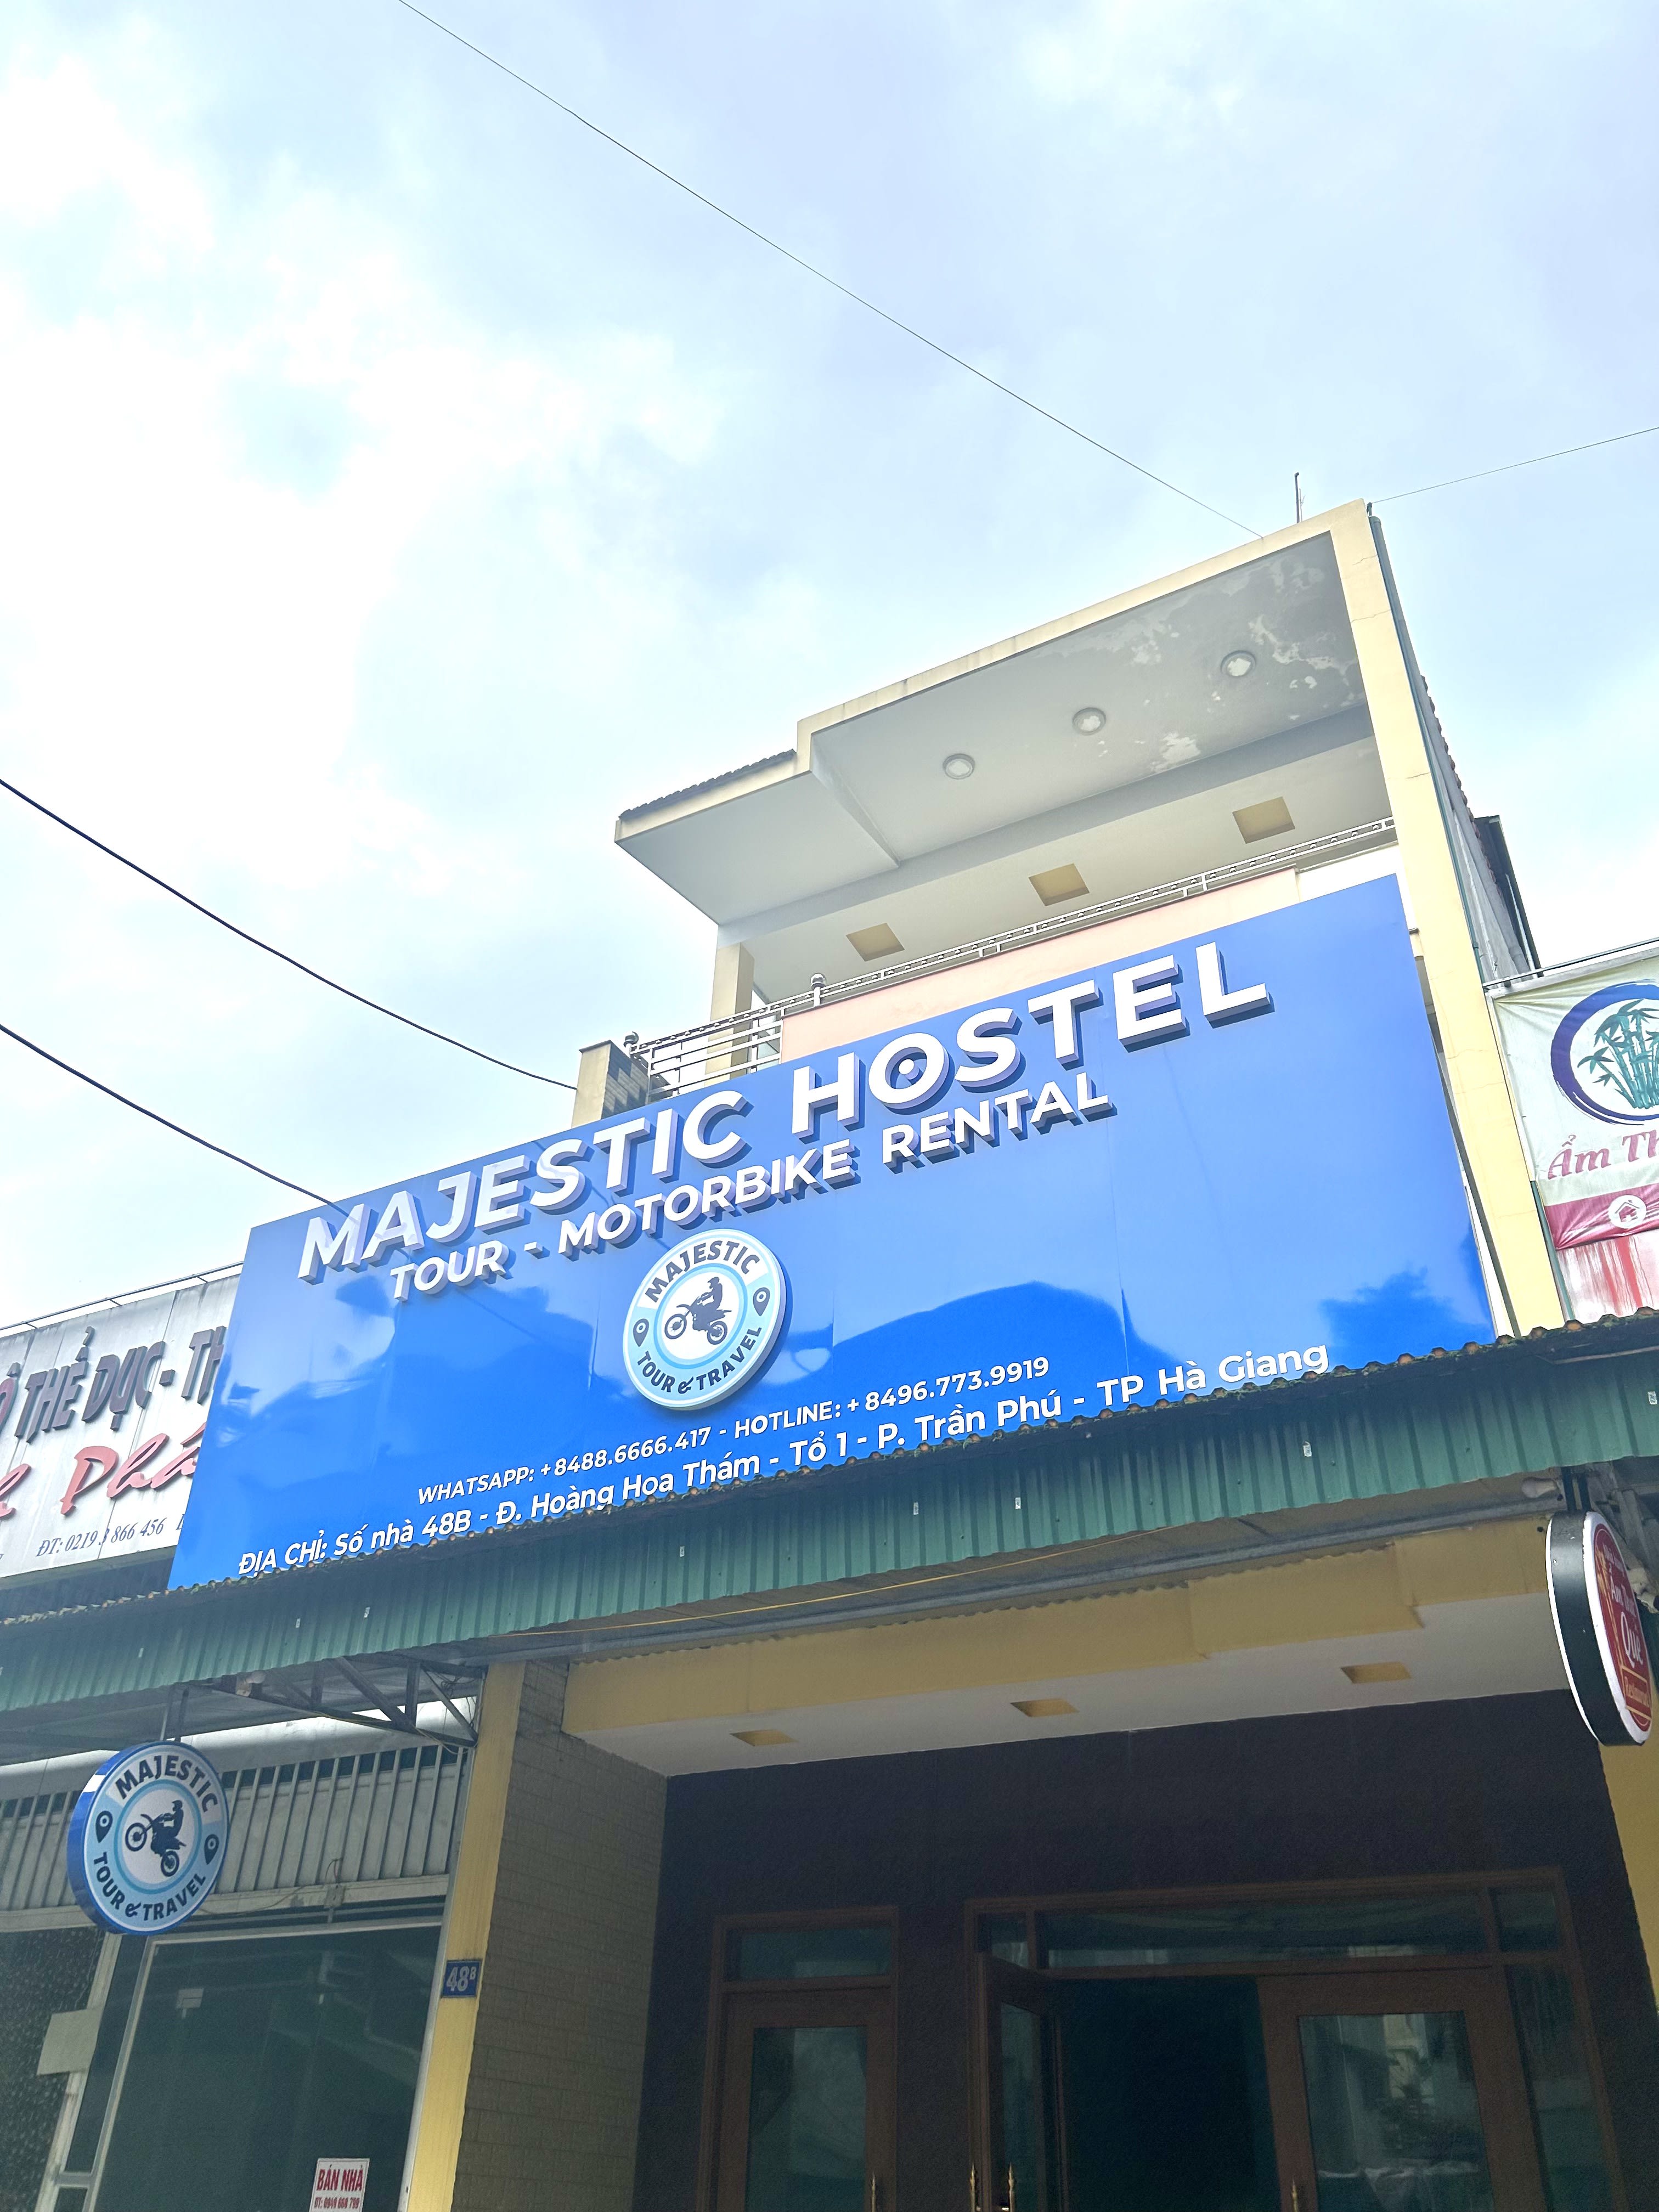 Majestic Hostel - Tour & Motorbike Rental - Ha Giang